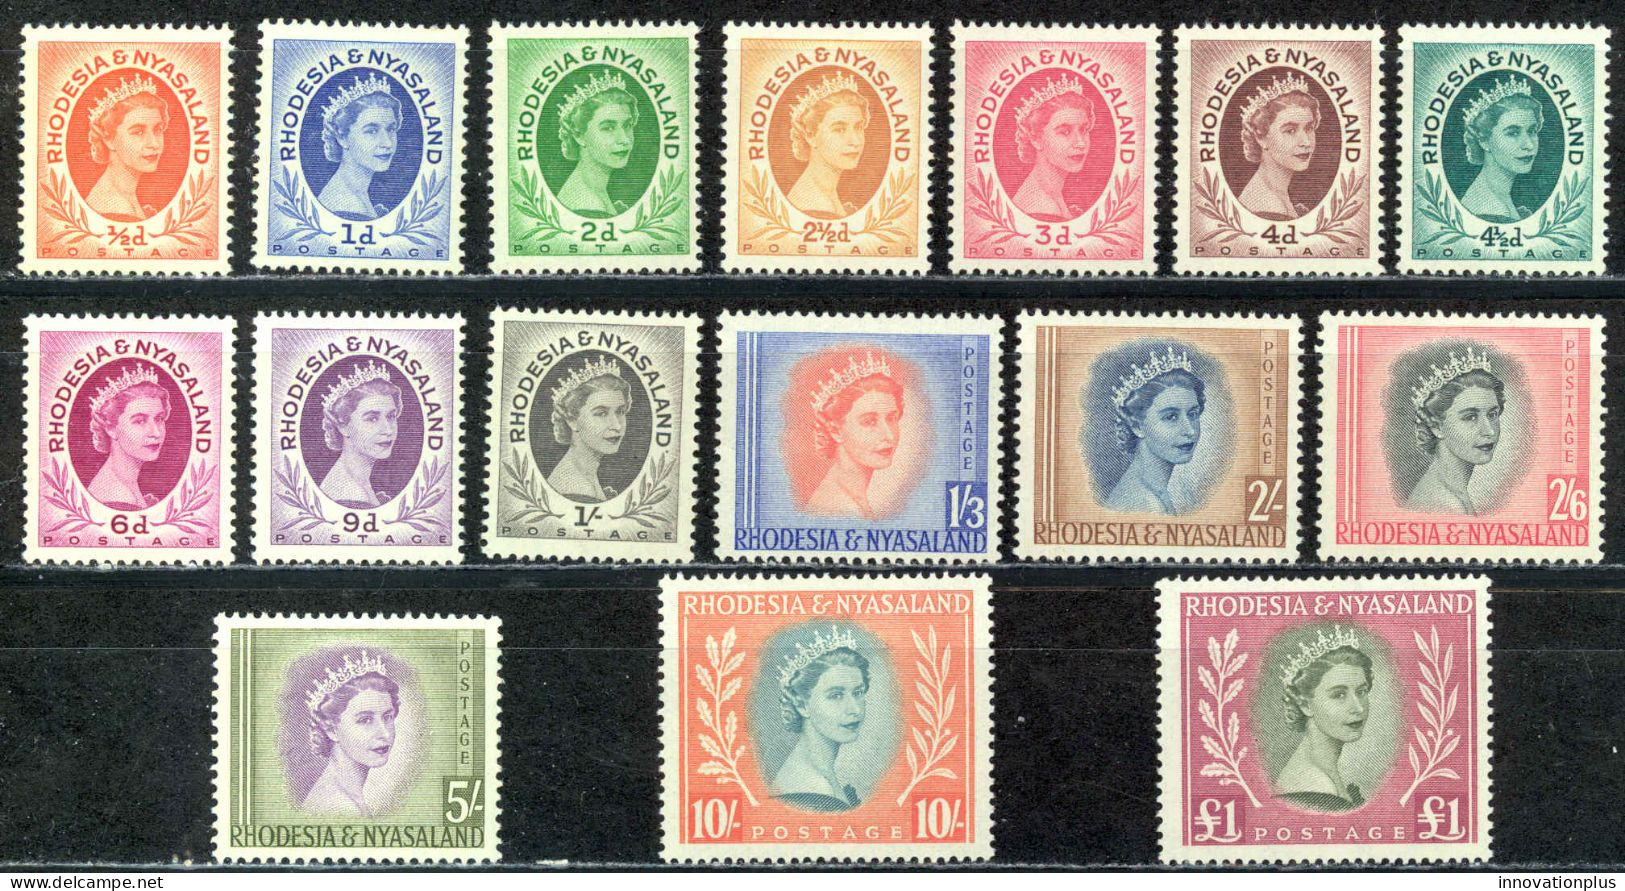 Rhodesia & Nyasaland Sc# 141-155 MH 1954-1956 QEII Definitives - Rhodésie & Nyasaland (1954-1963)